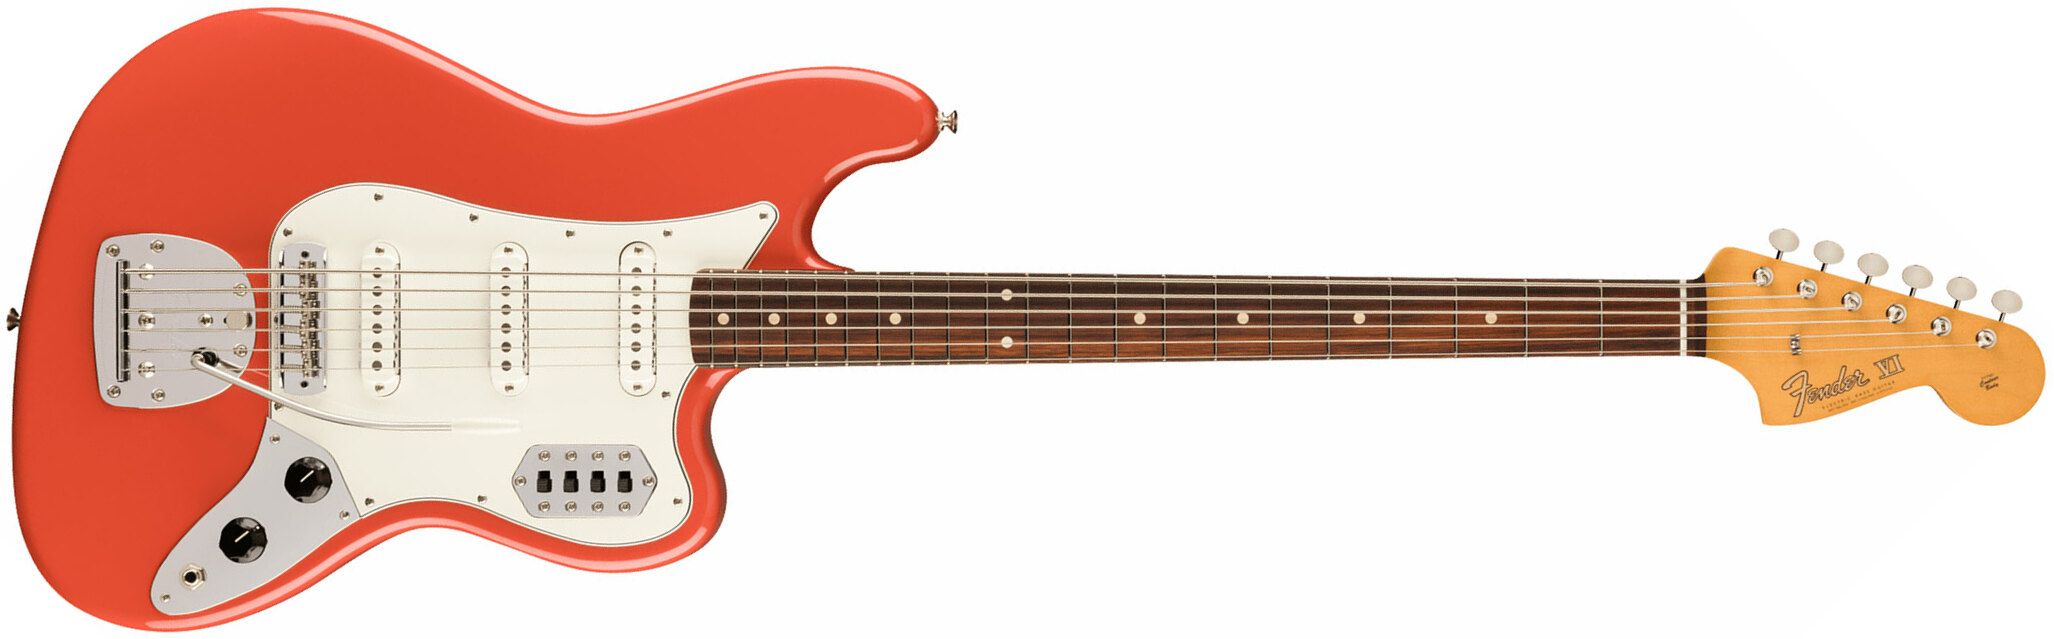 Fender 60s Bass Vi Vintera 2 3s Trem Rw - Fiesta Red - Bariton E-Gitarre - Main picture